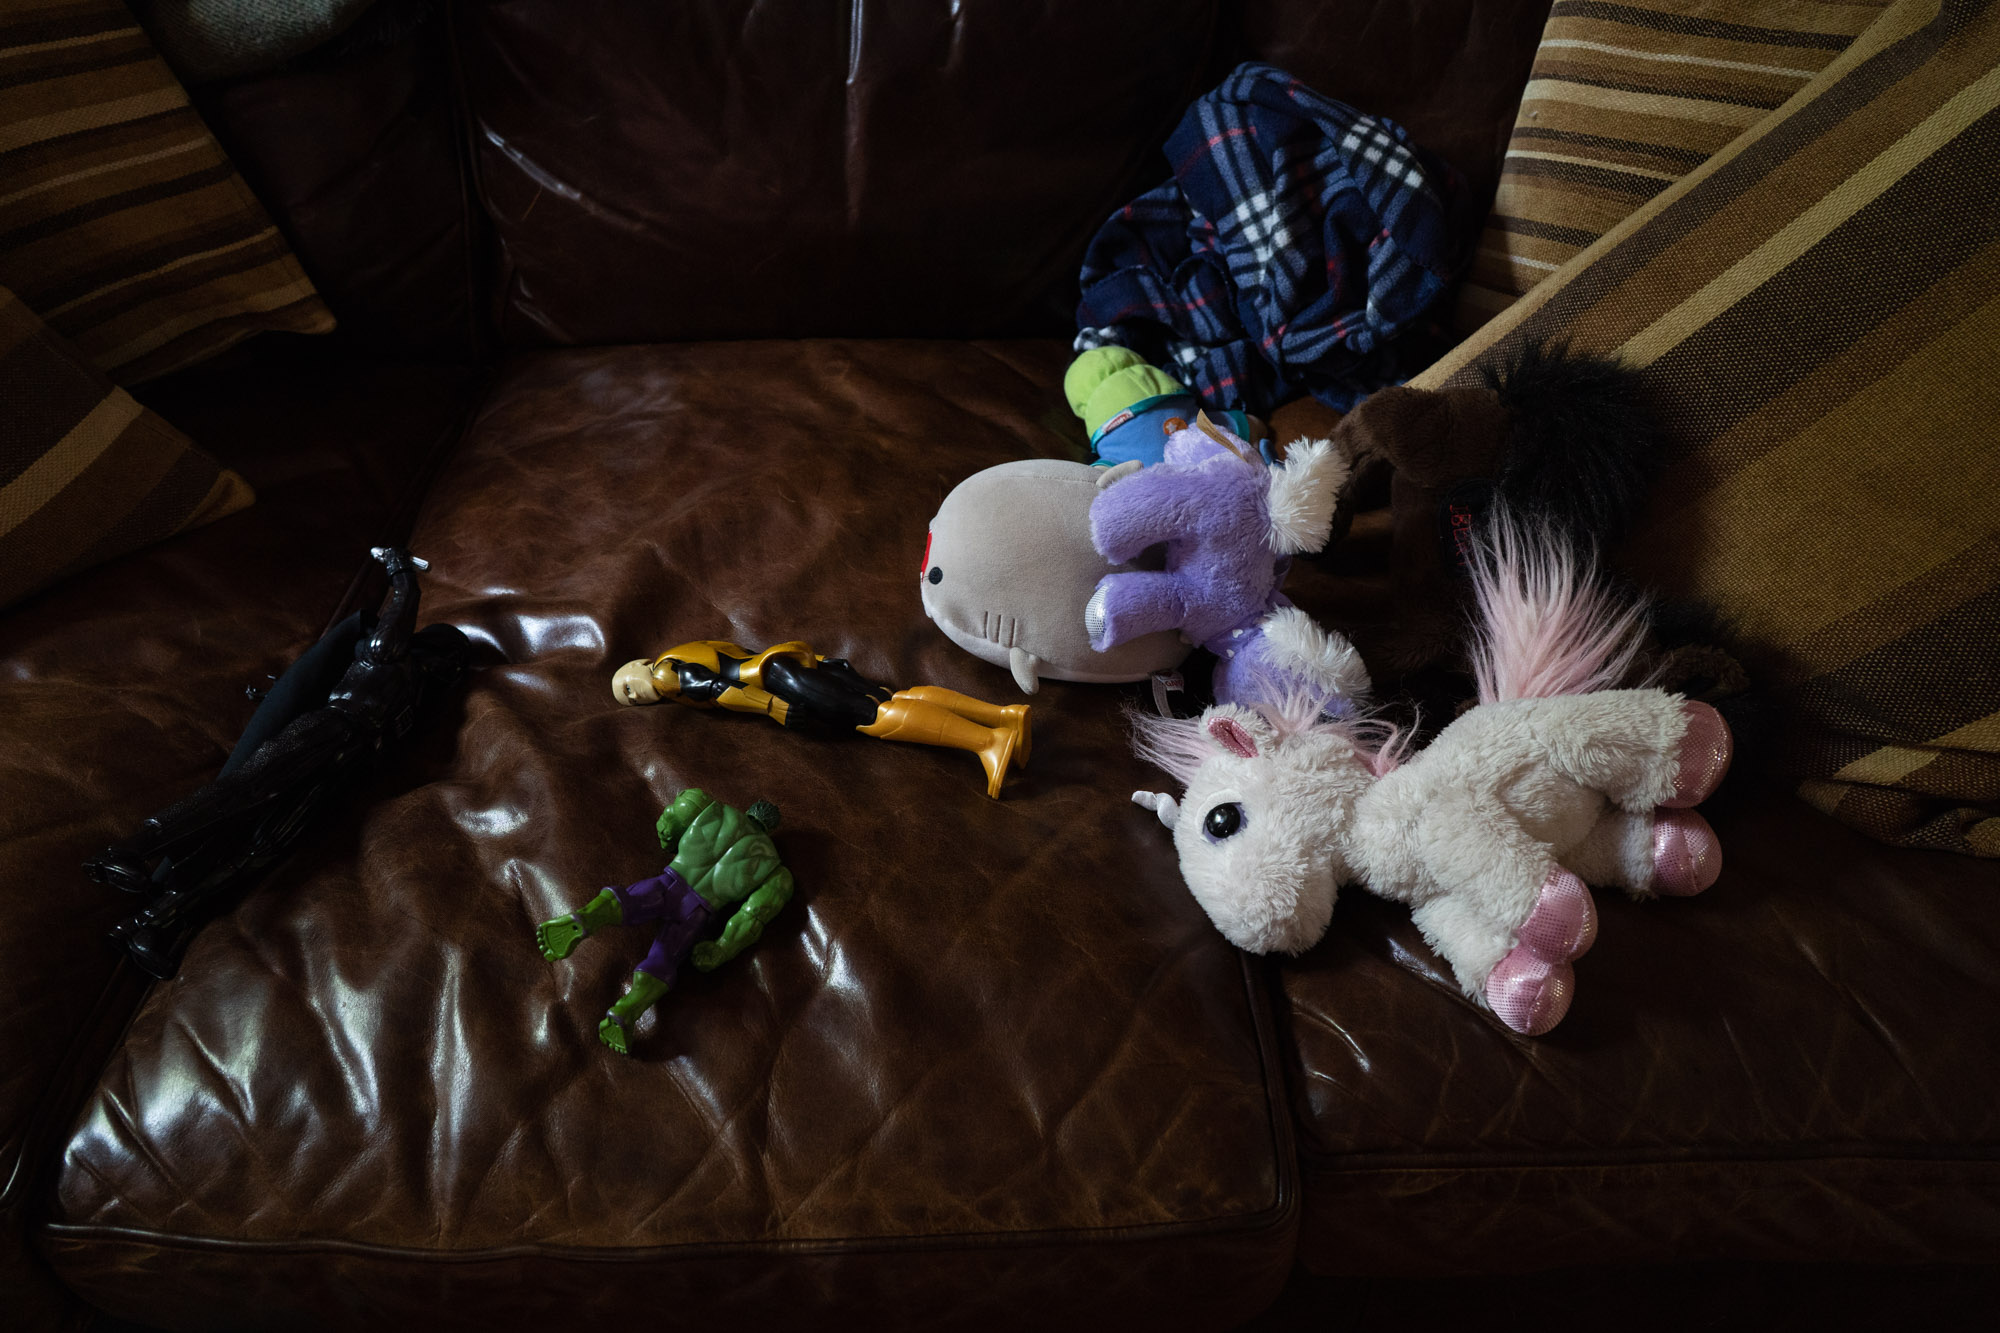 toys on floor - documentary family photography